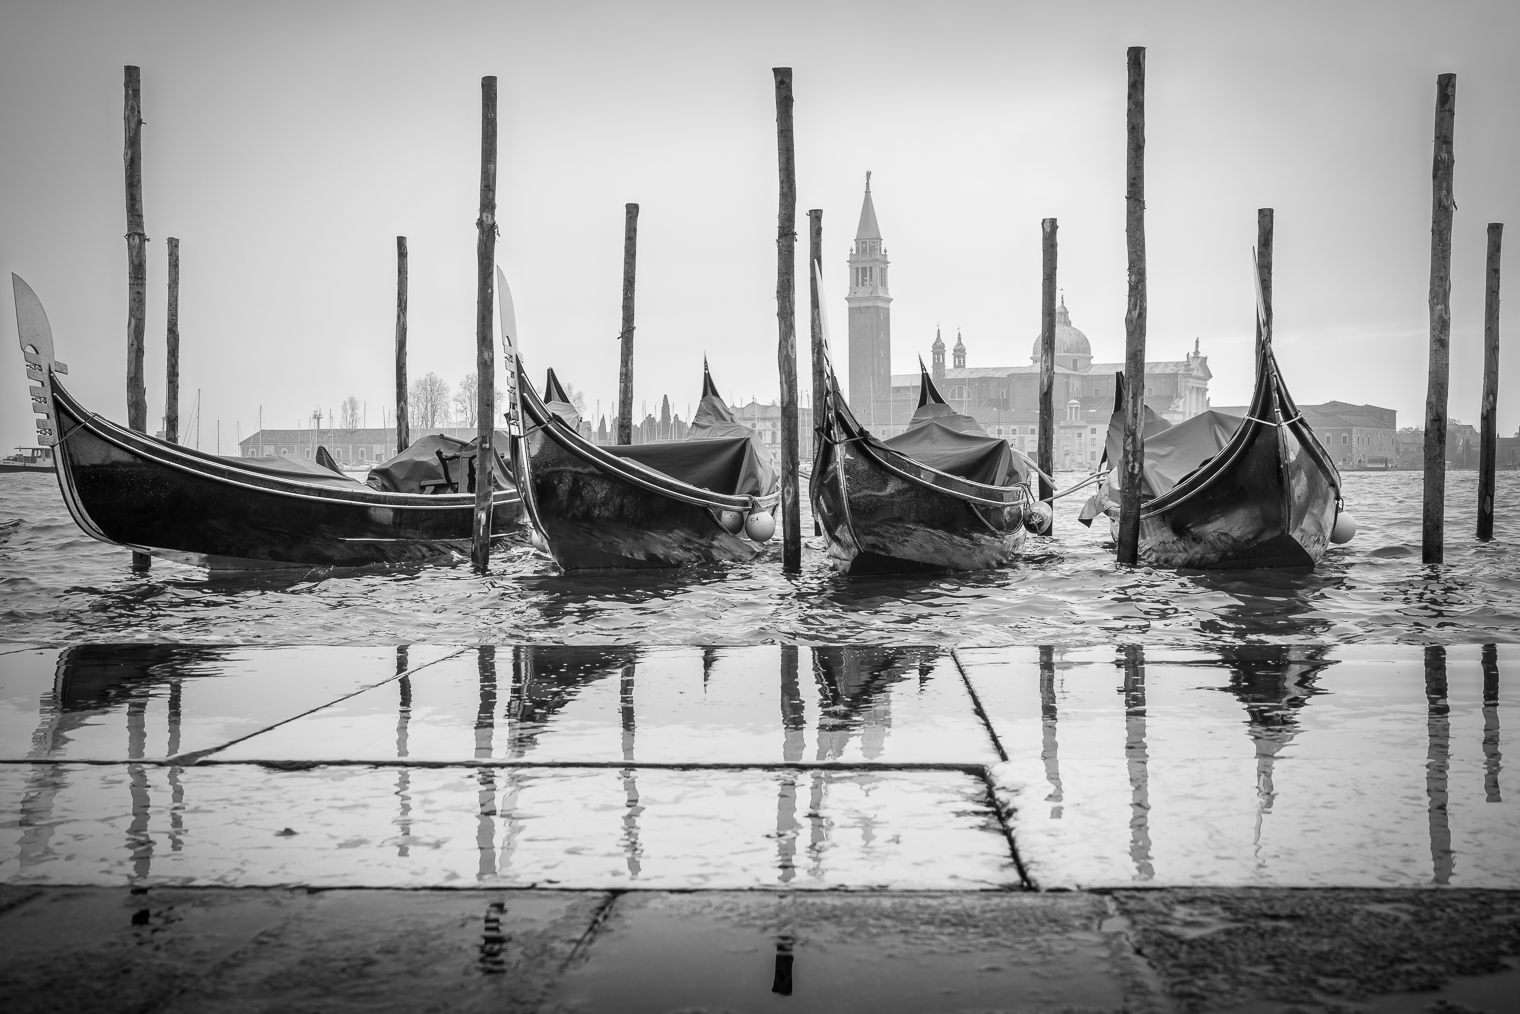 Venedig zur Zeit der "acqua alta" zeigt die Morbidität und Vergänglichkeit dieser Stadt eindrücklich